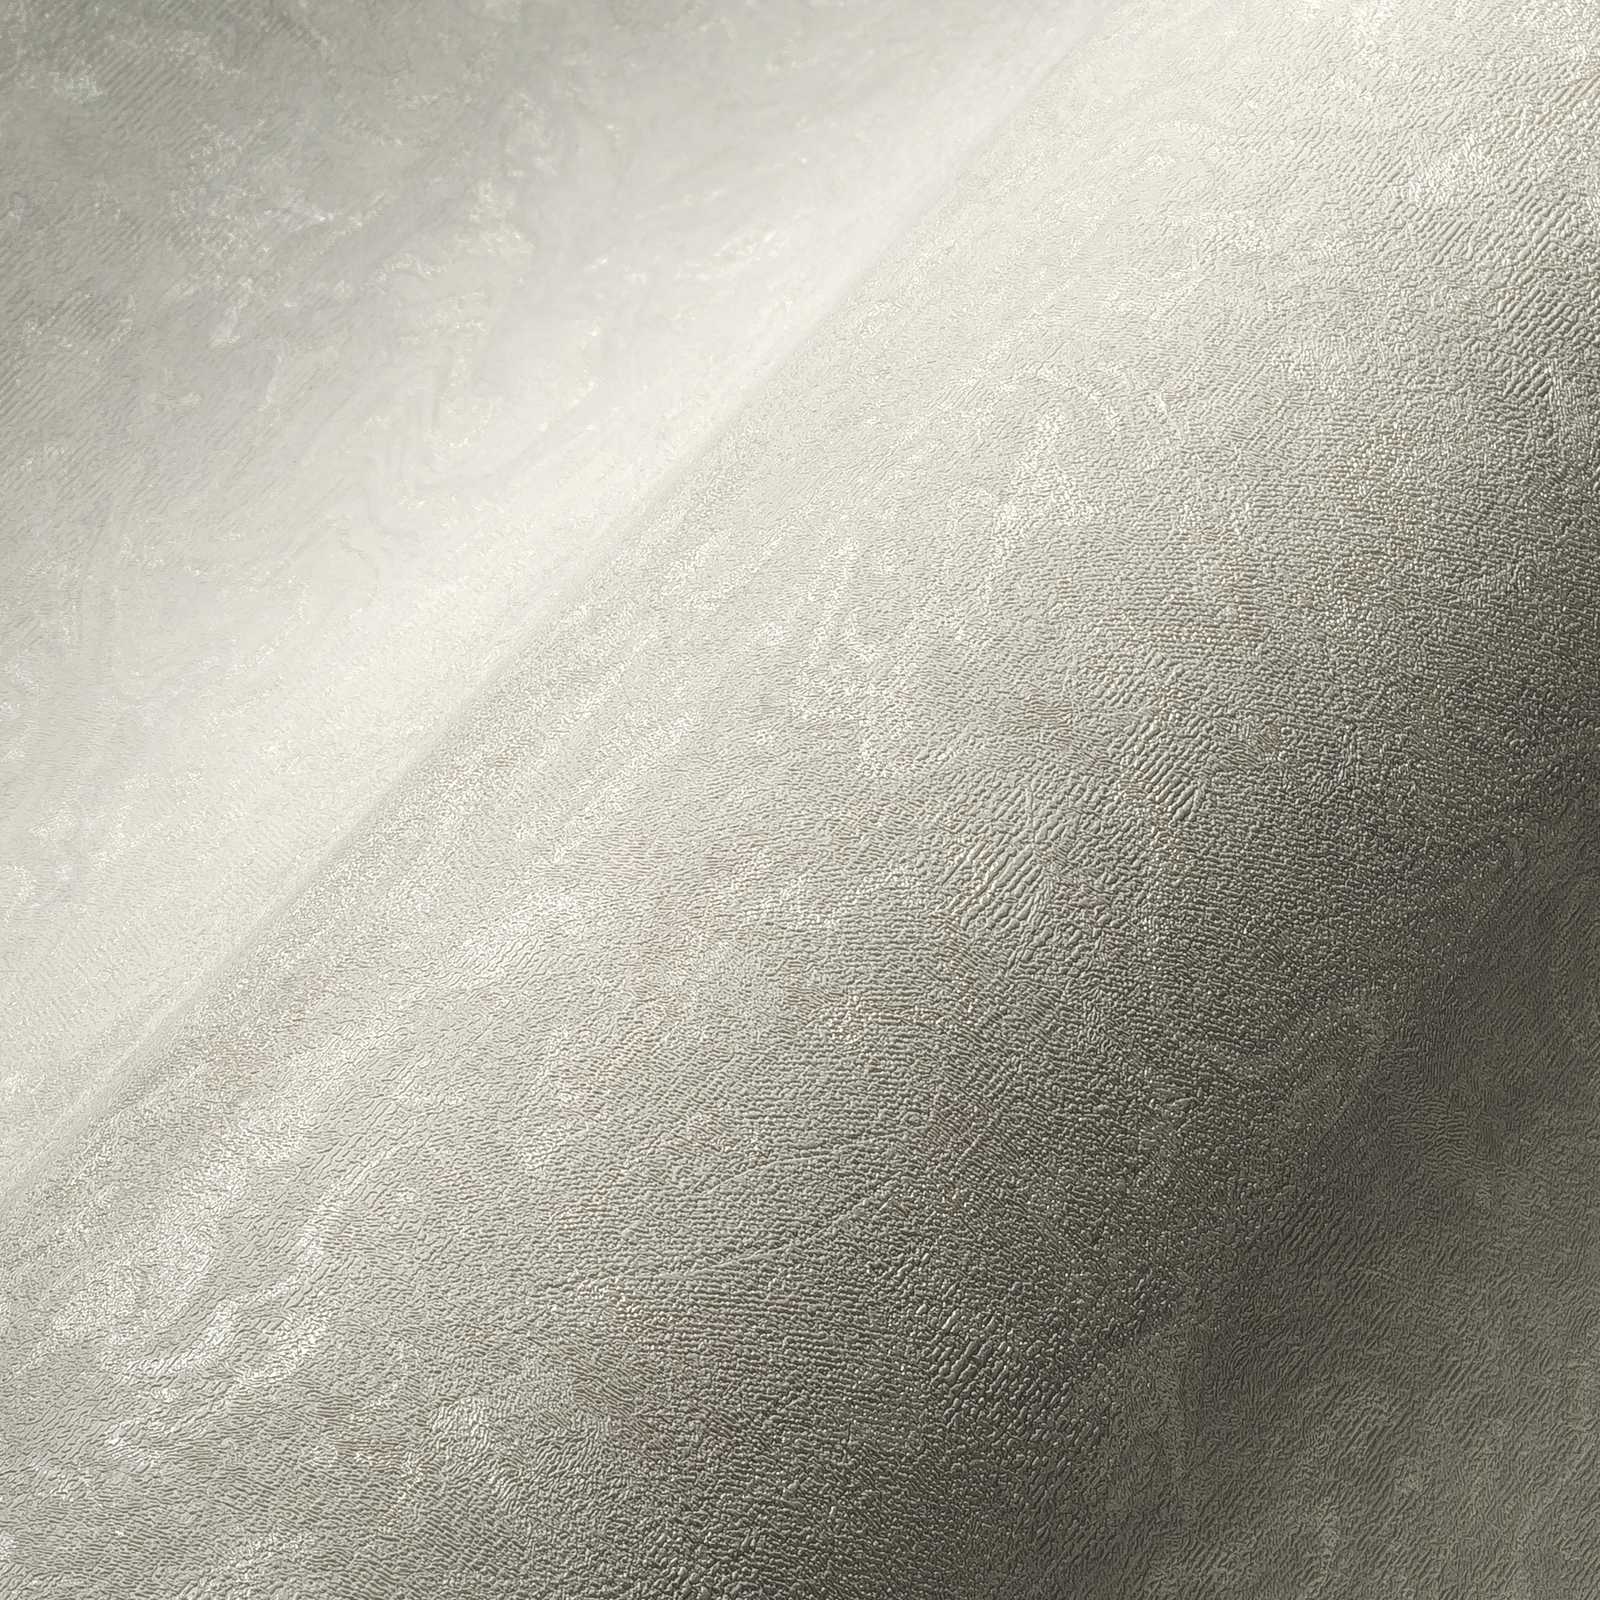             Crèmewit behang met subtiele marmering - wit, grijs
        